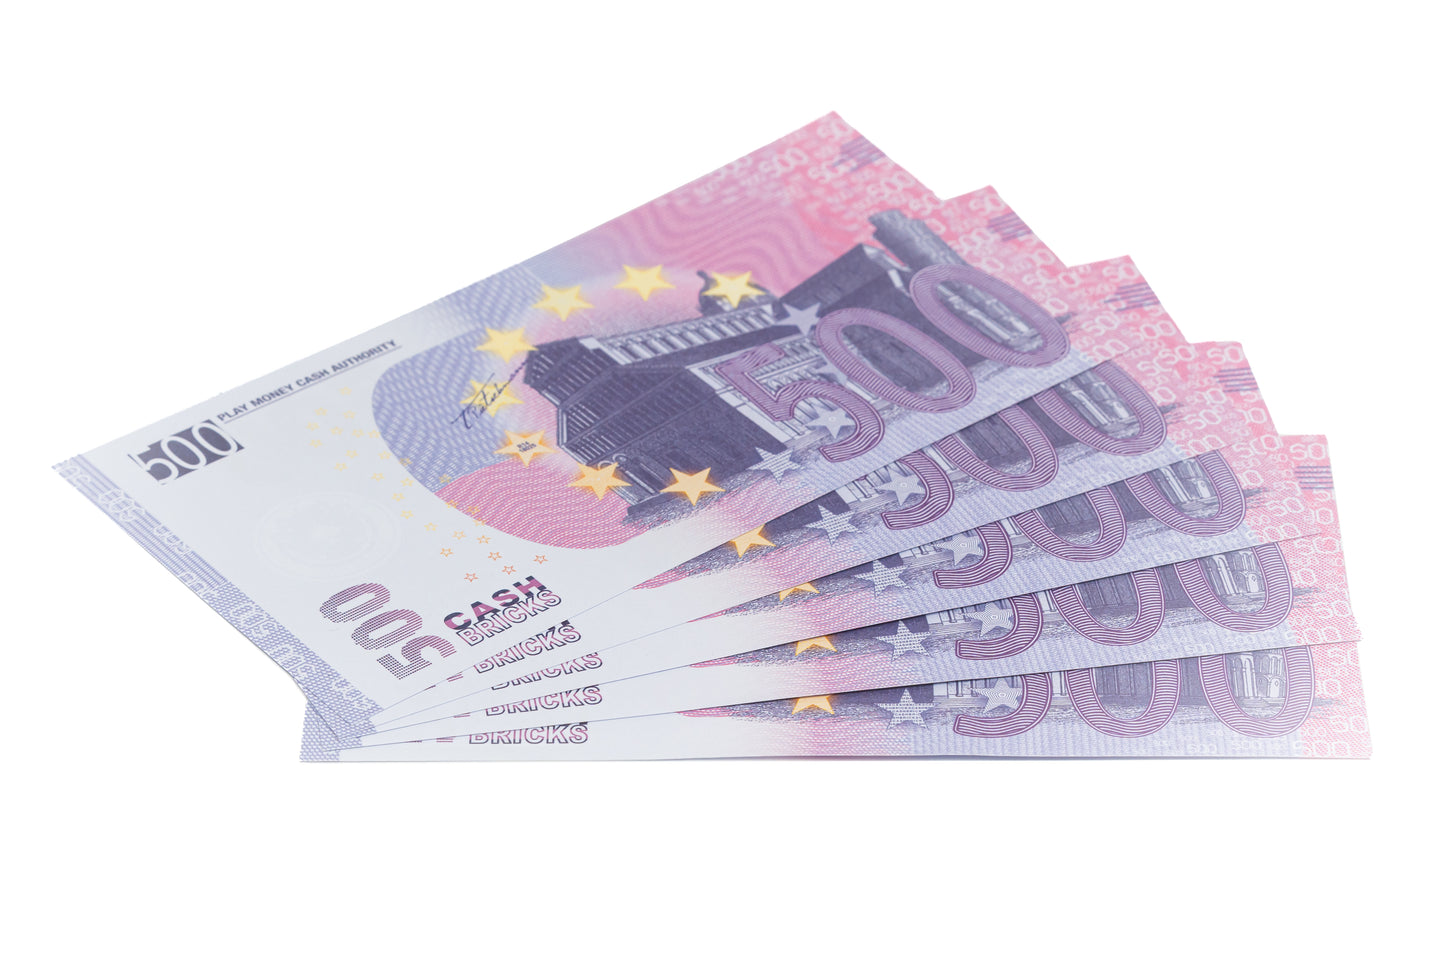 Cashbricks® Spielgeld Euro Bündel - €500 Scheine